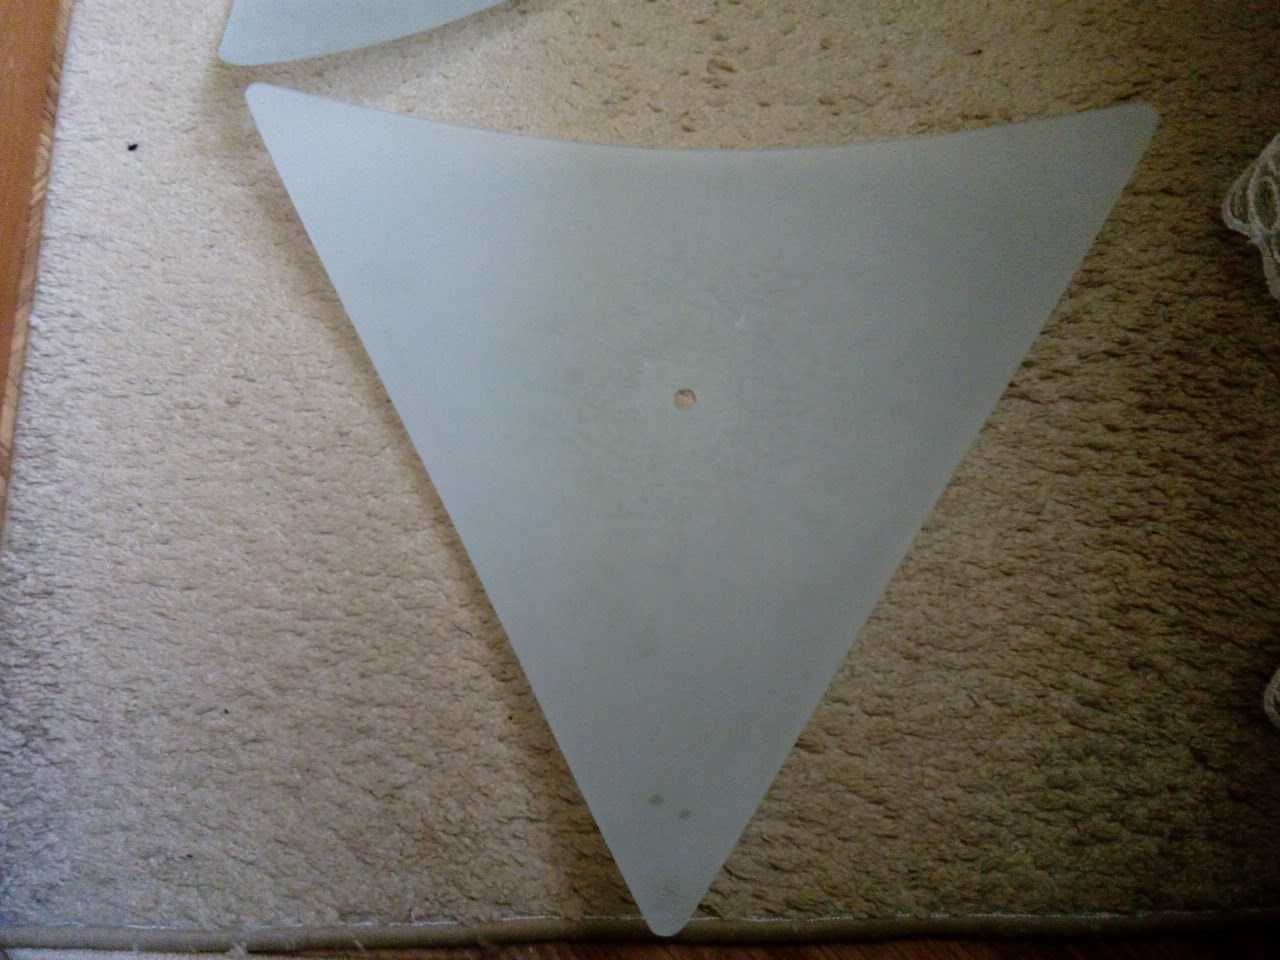 тарелка для люстры треугольной формы